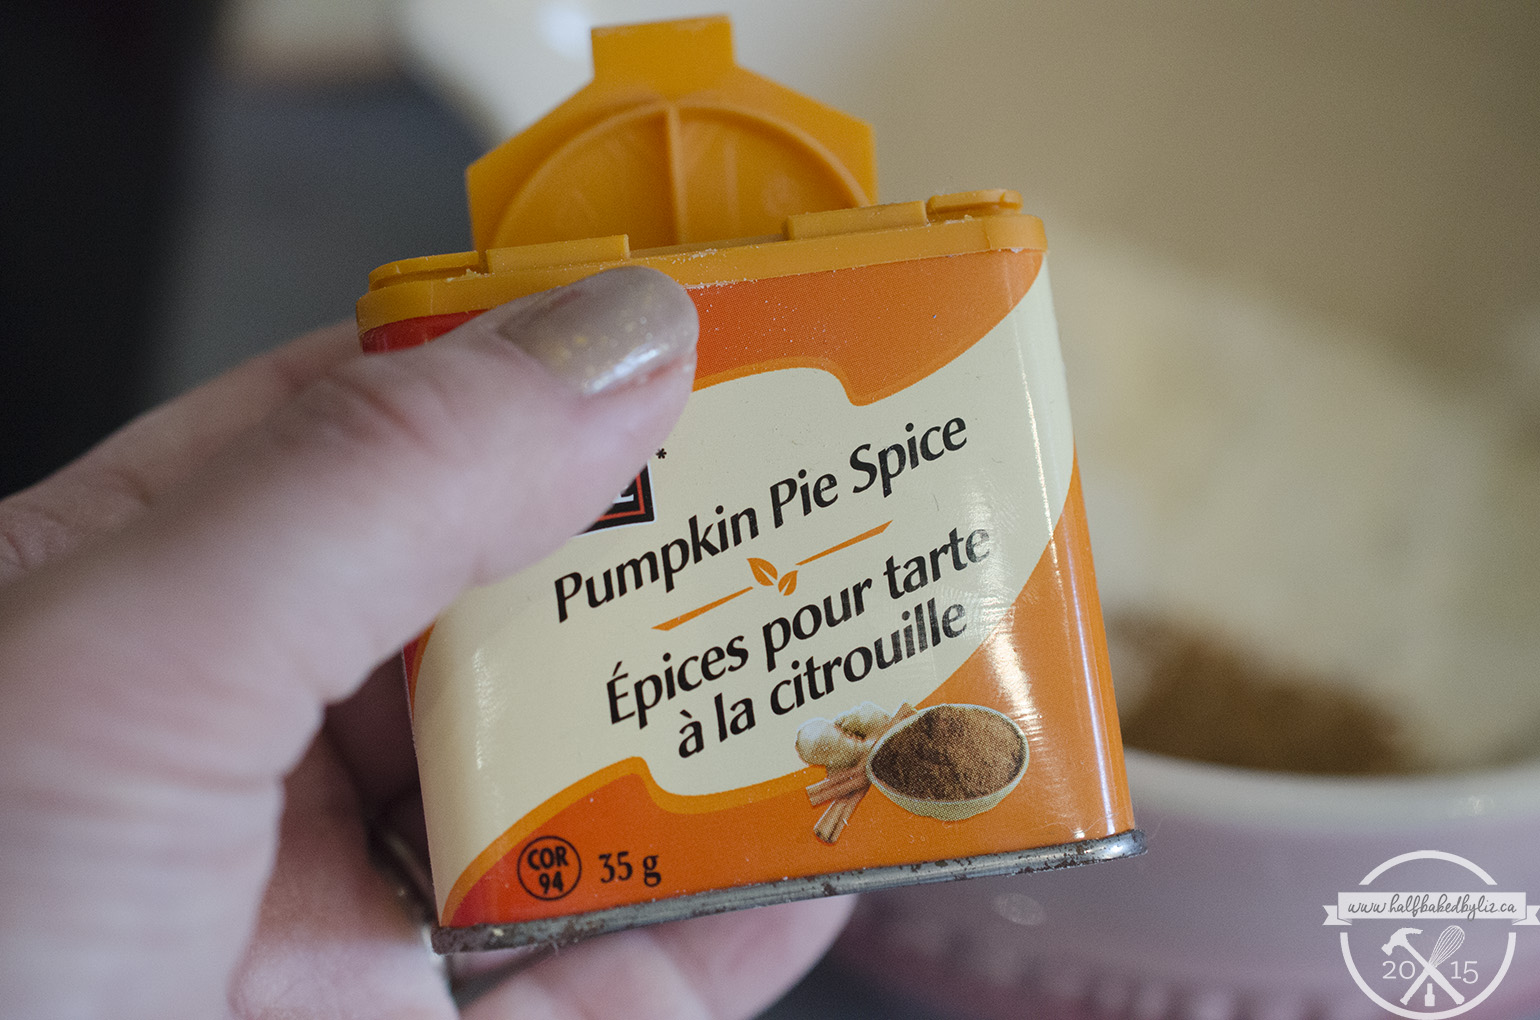 1 - Pumpkin Pie Spice